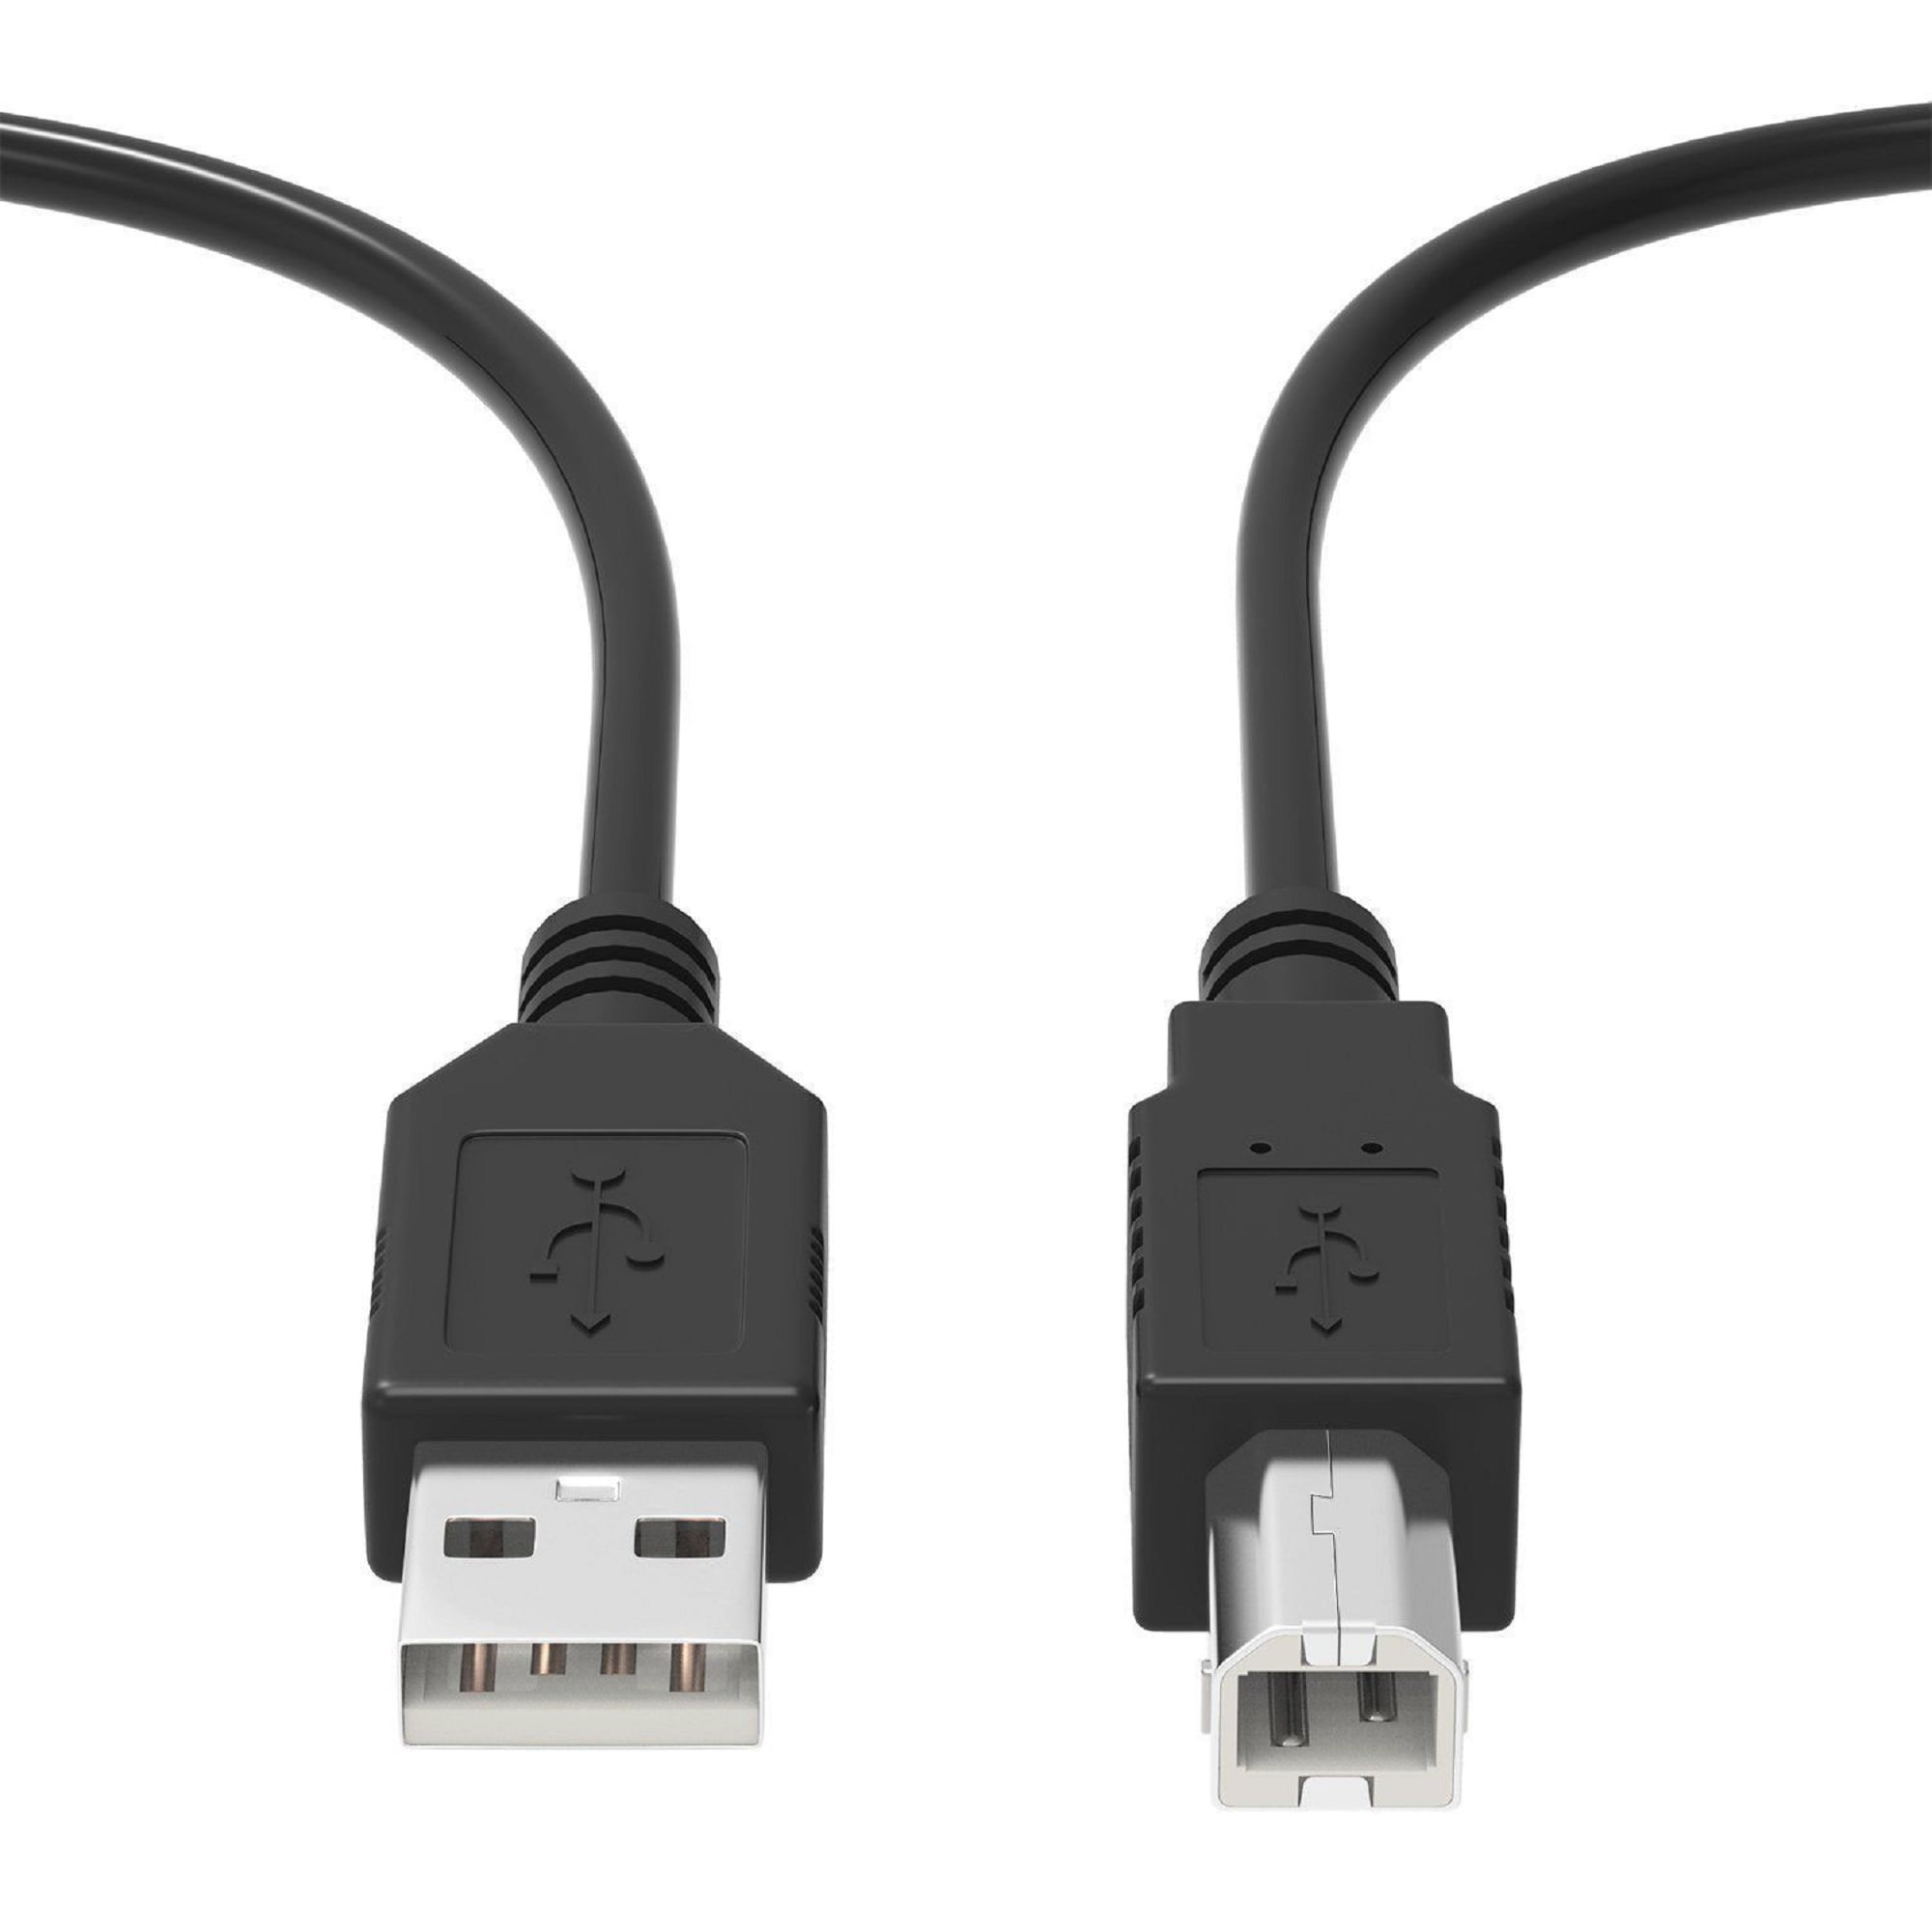 SLLEA USB Cable PC Laptop Data Sync Cord for AKiTio Taurus Super-S LCM 2 Bay SATA Firewire 800 400 eSATA